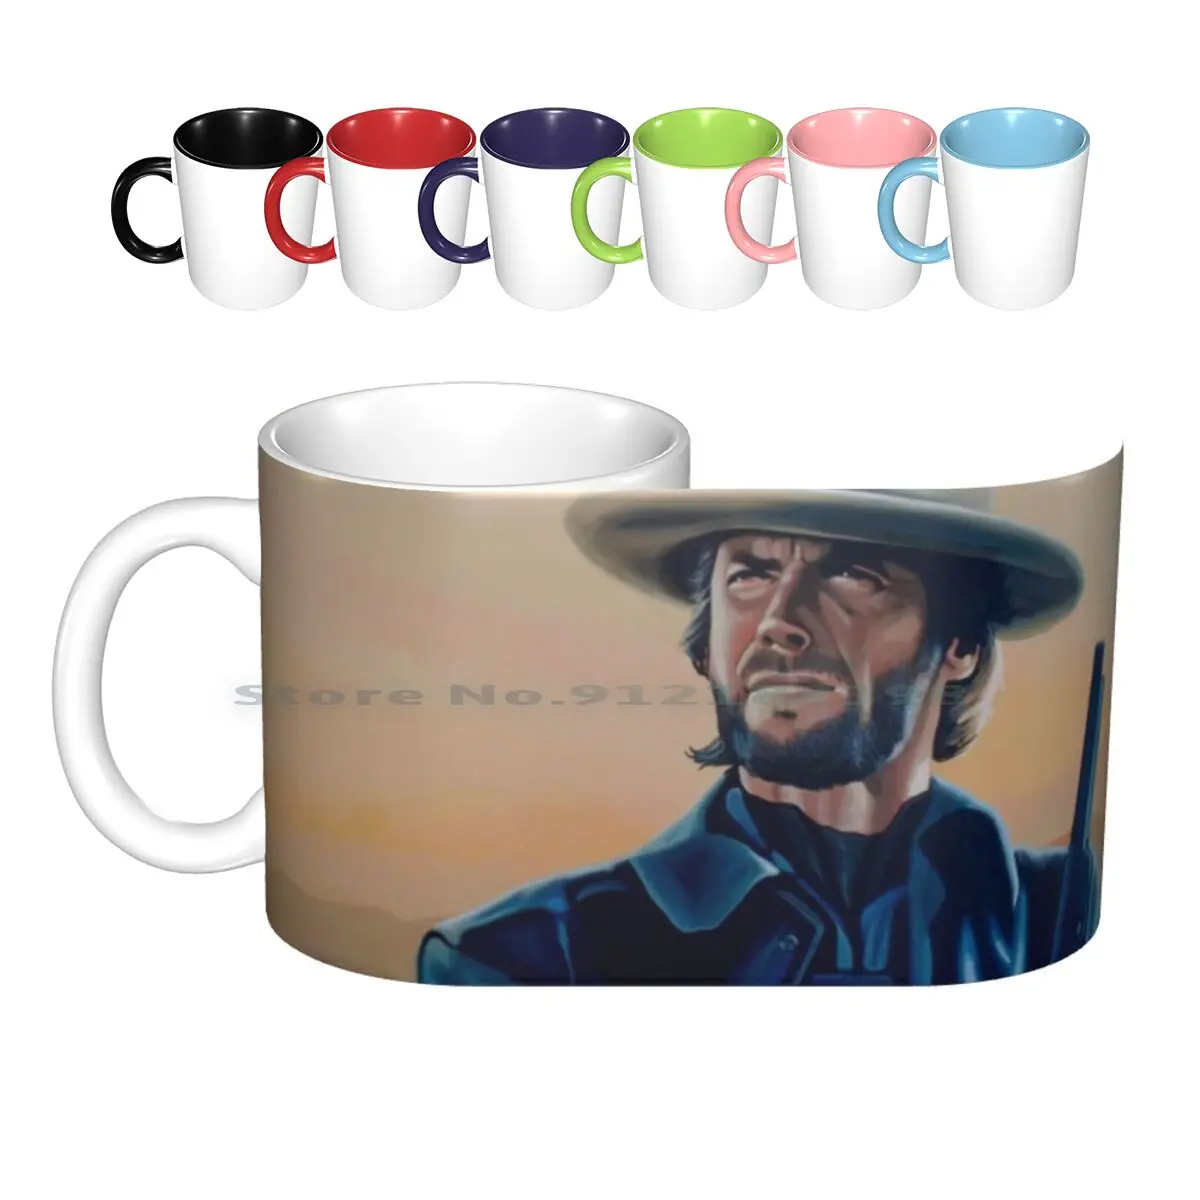 

Керамические кружки Clint Eastwood с рисунком, кофейные чашки, кружка для молока, чая, кружка Eastwood, мосты для детей в округе Мэдисон